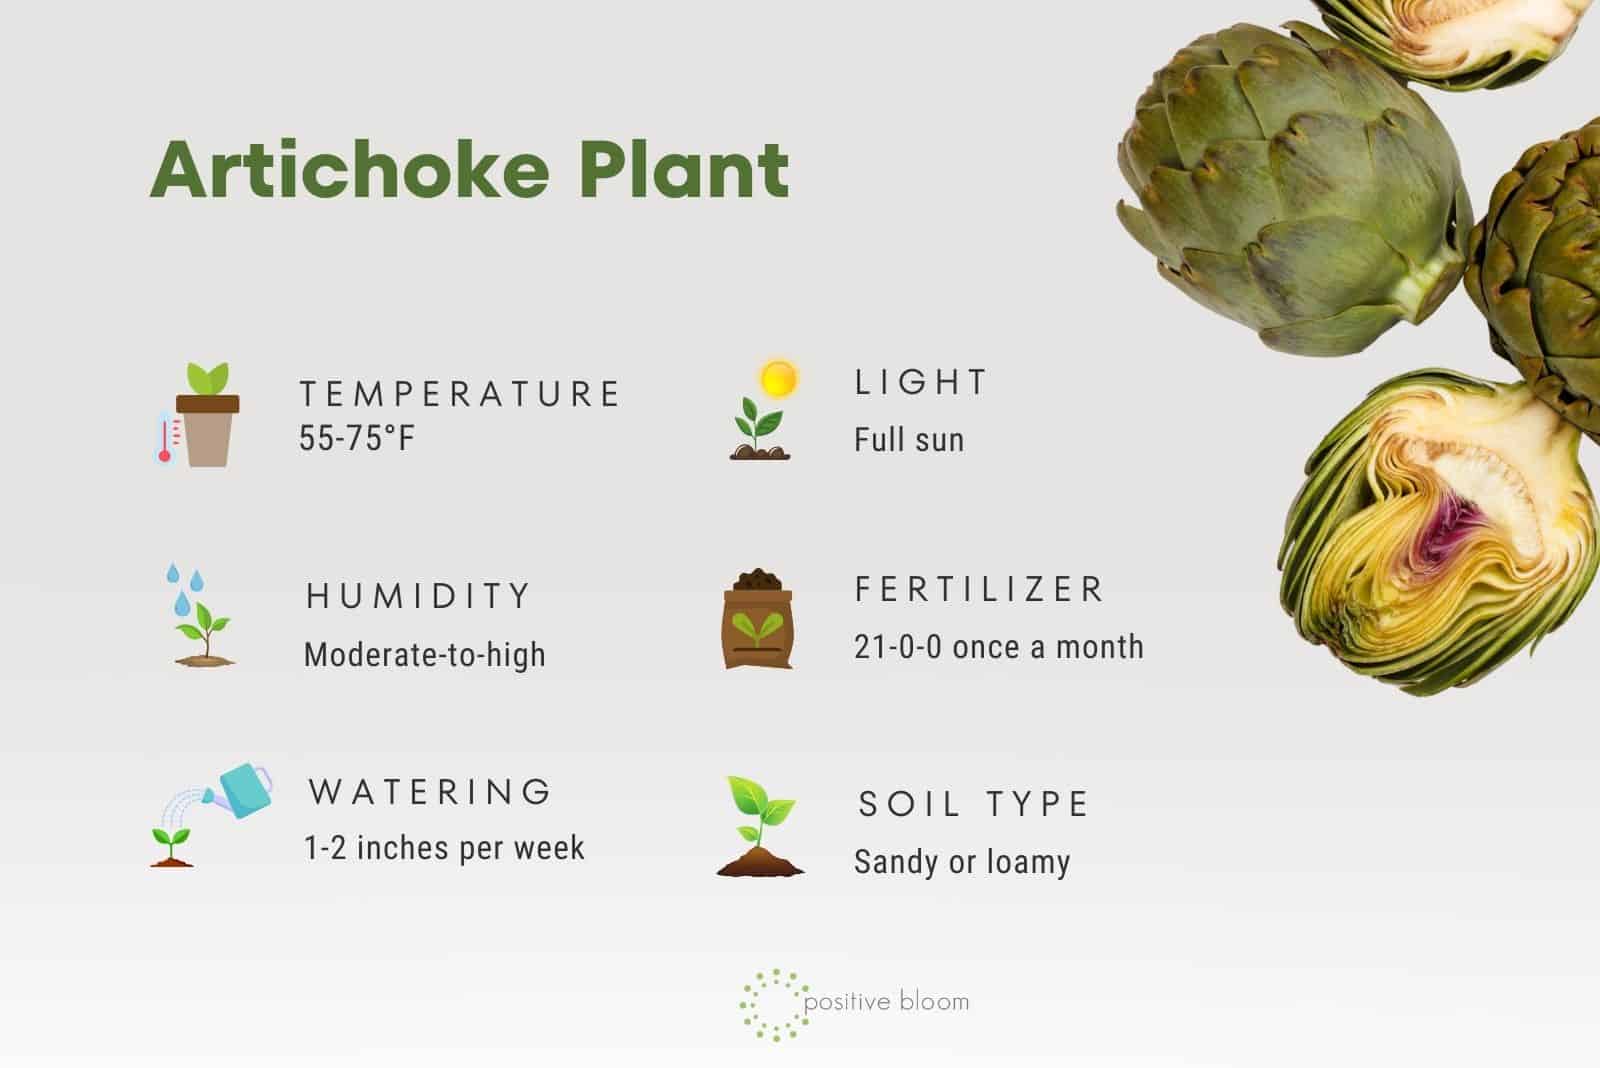 Artichoke Plant care guide